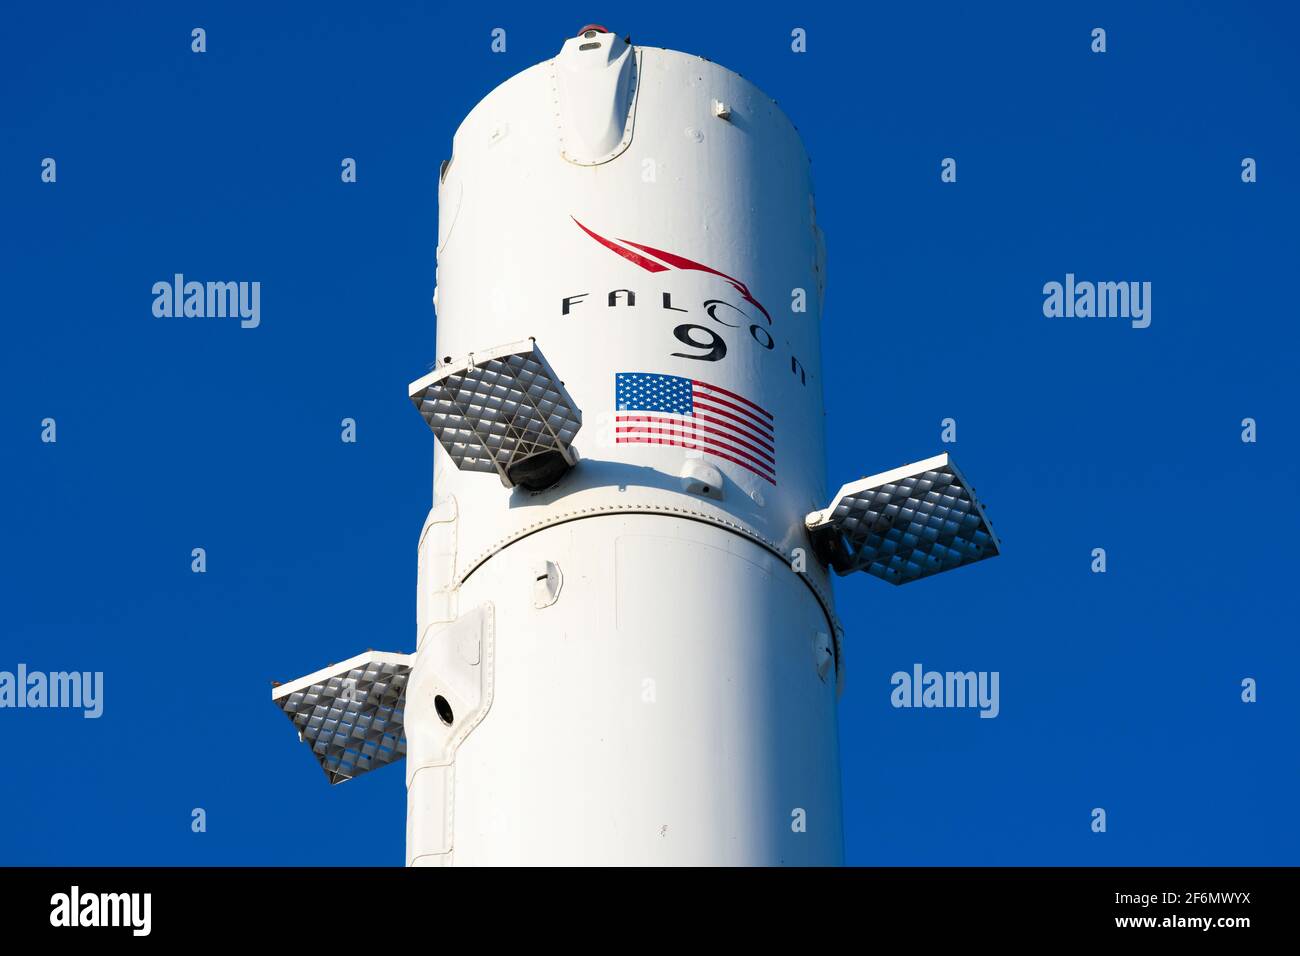 Panneau Falcon 9 sur le booster de fusée exposé à SpaceX, Space exploration technologies Corporation, siège social. SpaceX est un aérospatial américain privé Banque D'Images